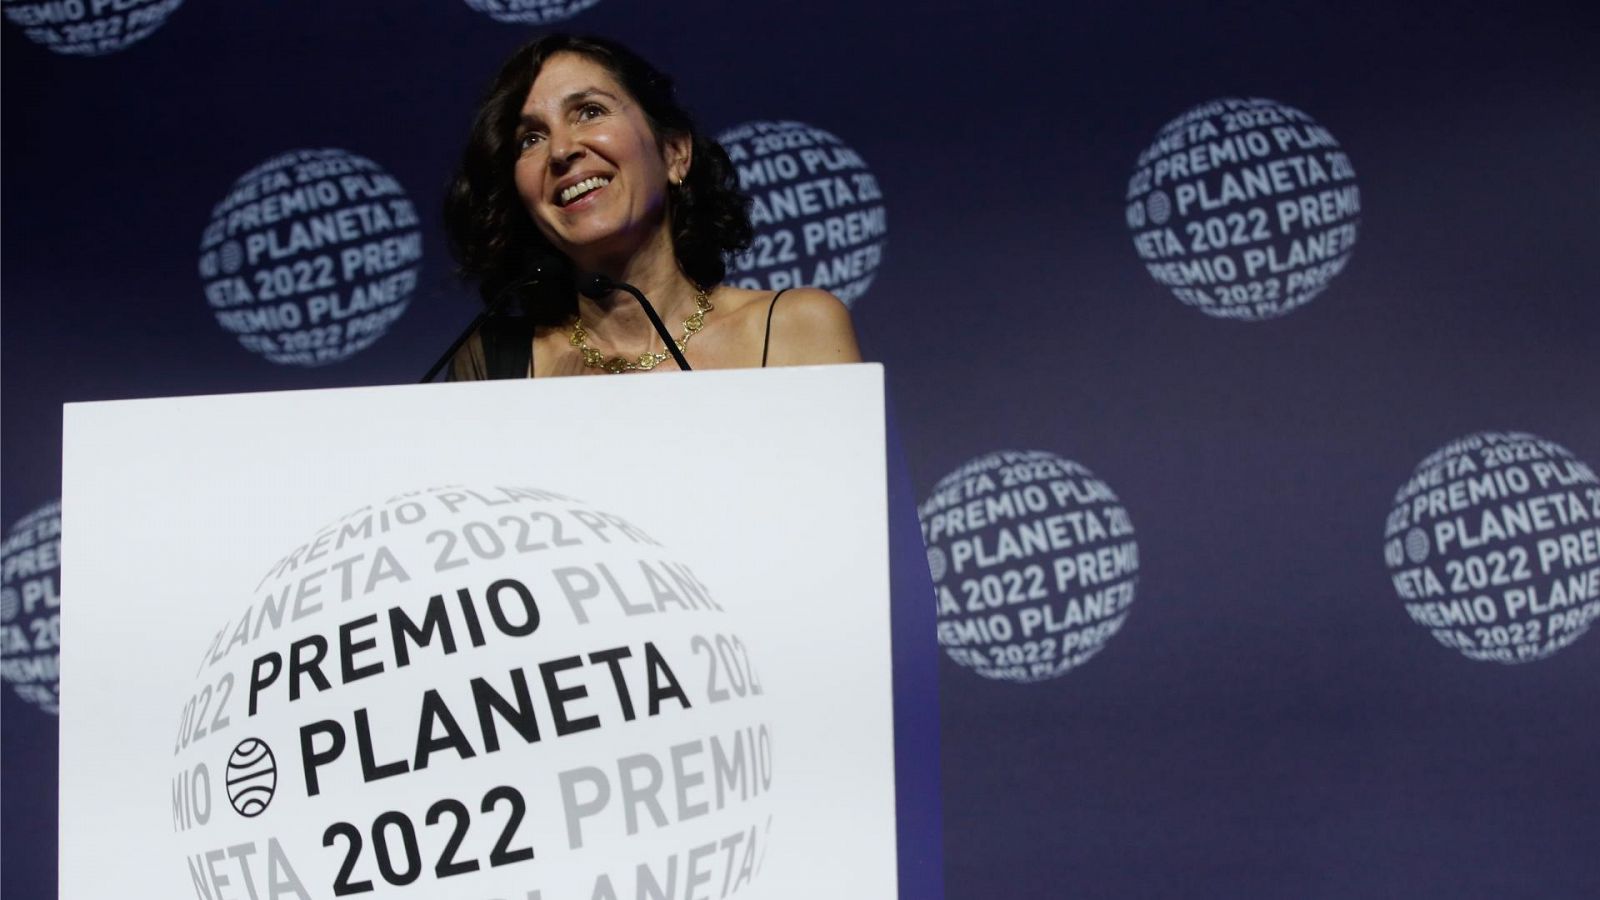 Cristina Campos, finalista Planeta 2022: "Es una historia de amor contemporánea"